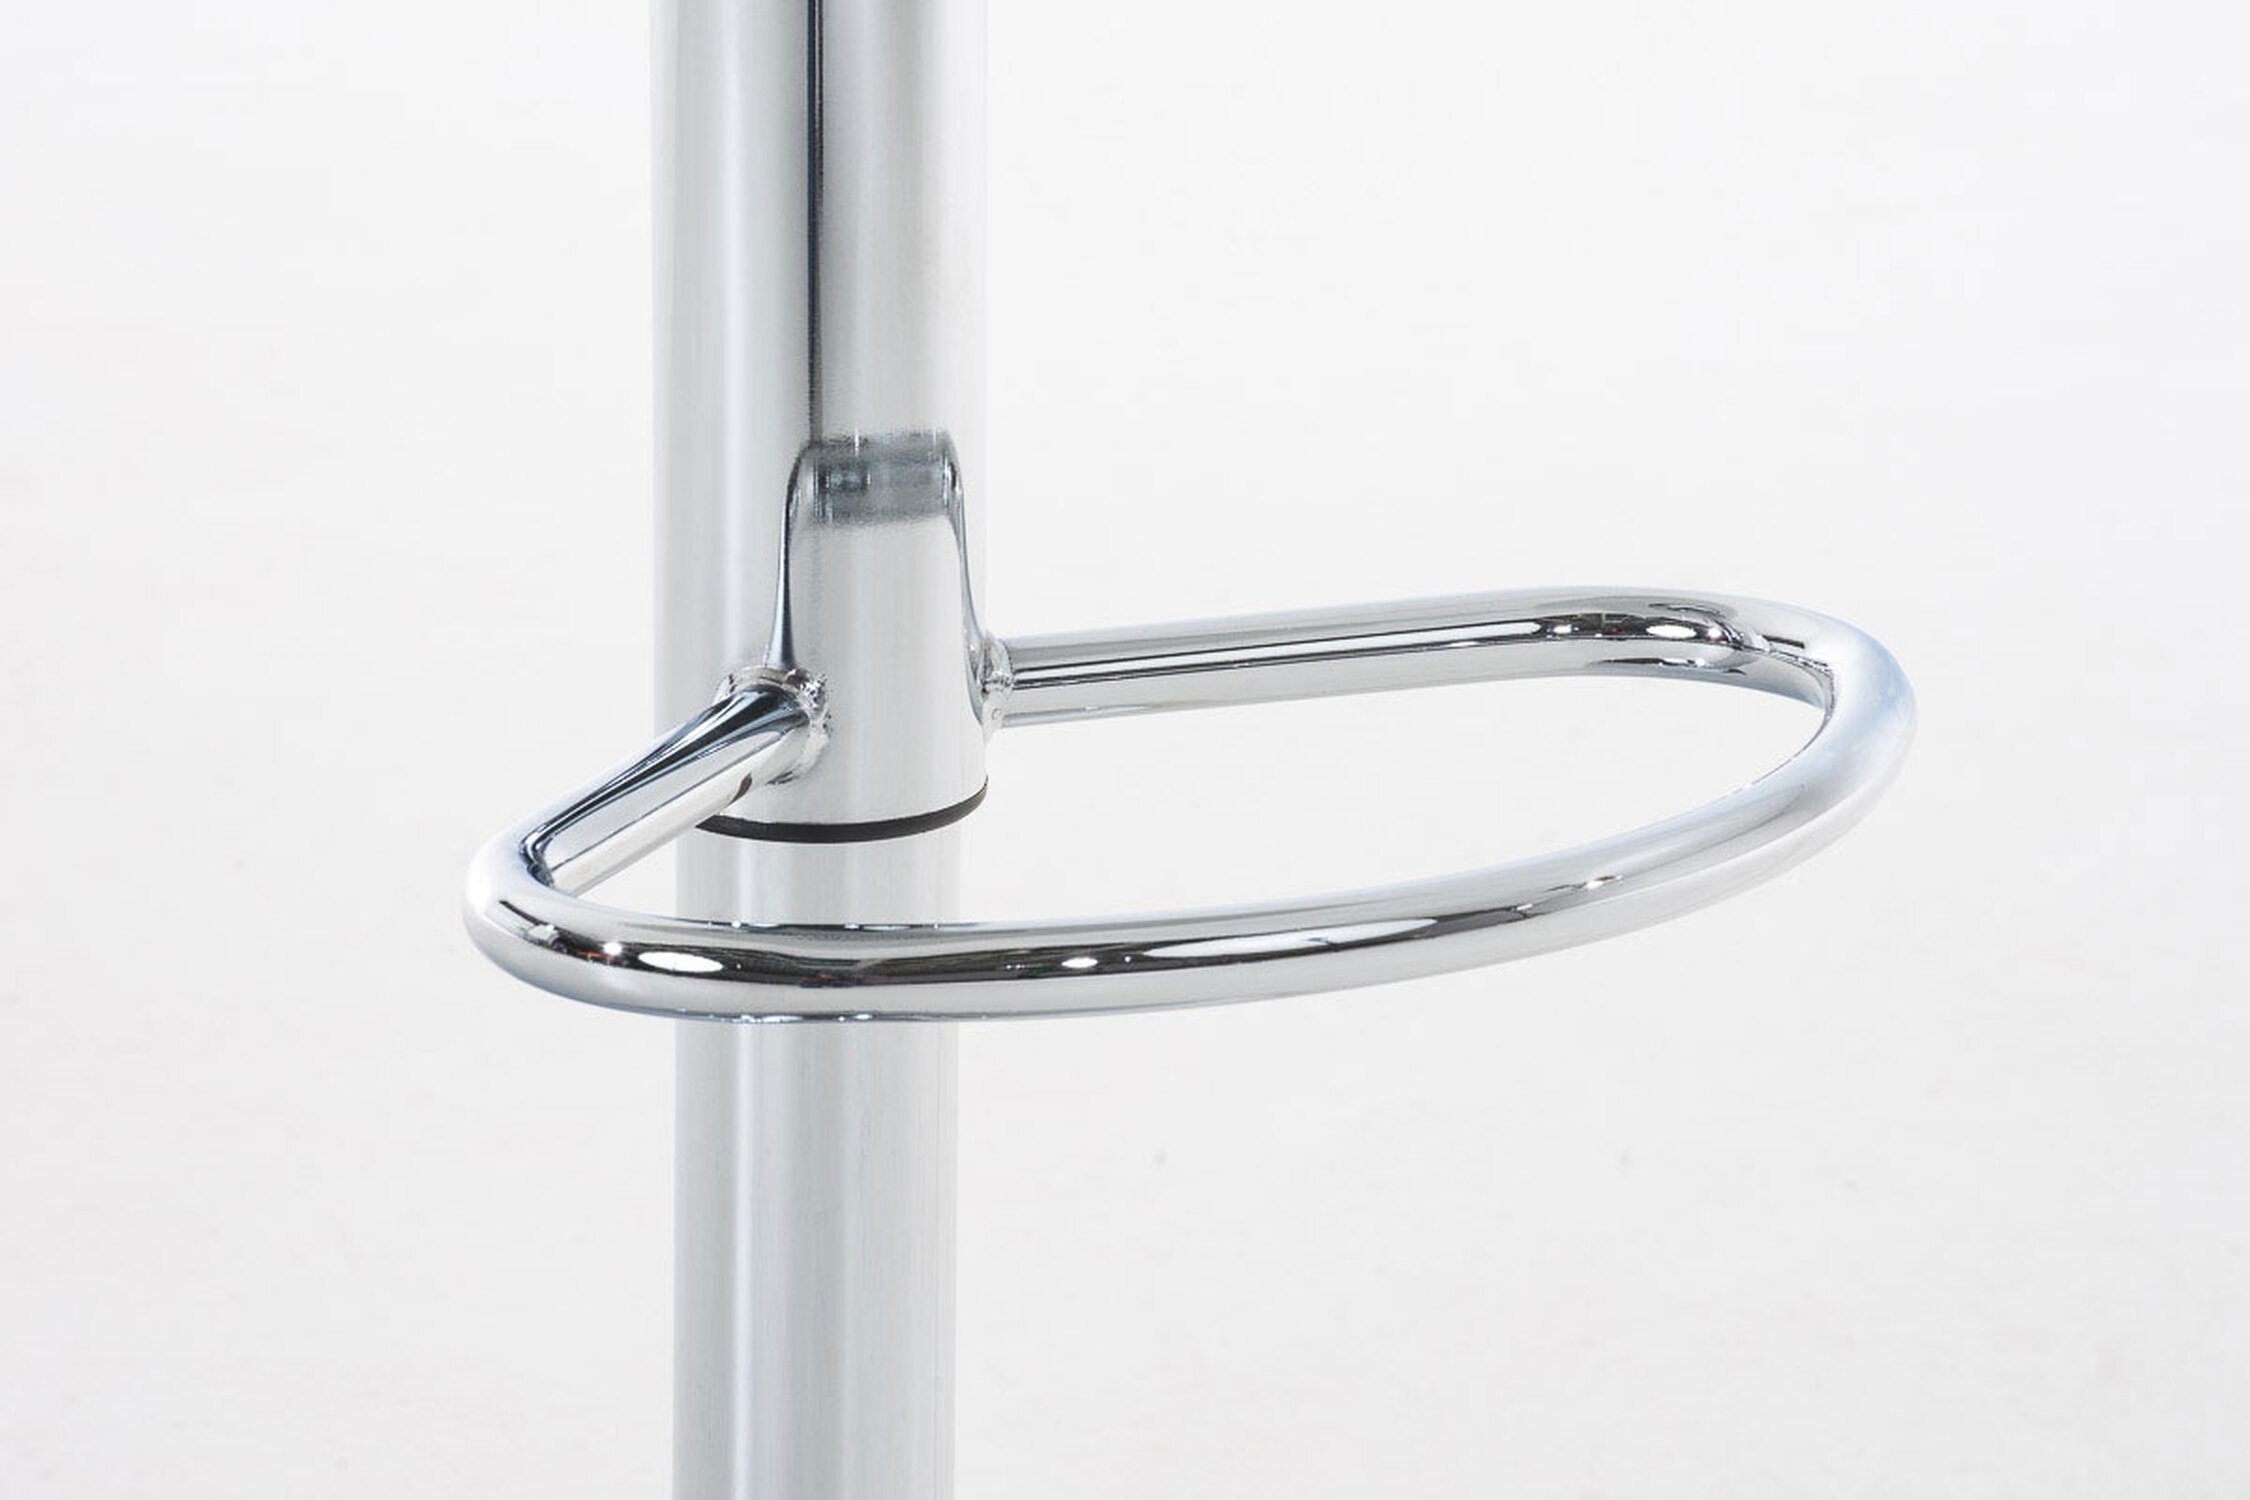 TPFLiving Barhocker Hoover (mit Küche - Kunststoff Hocker Metall & - Theke - Sitzfläche: Grau Fußstütze Tresenhocker), Chrom für Gestell